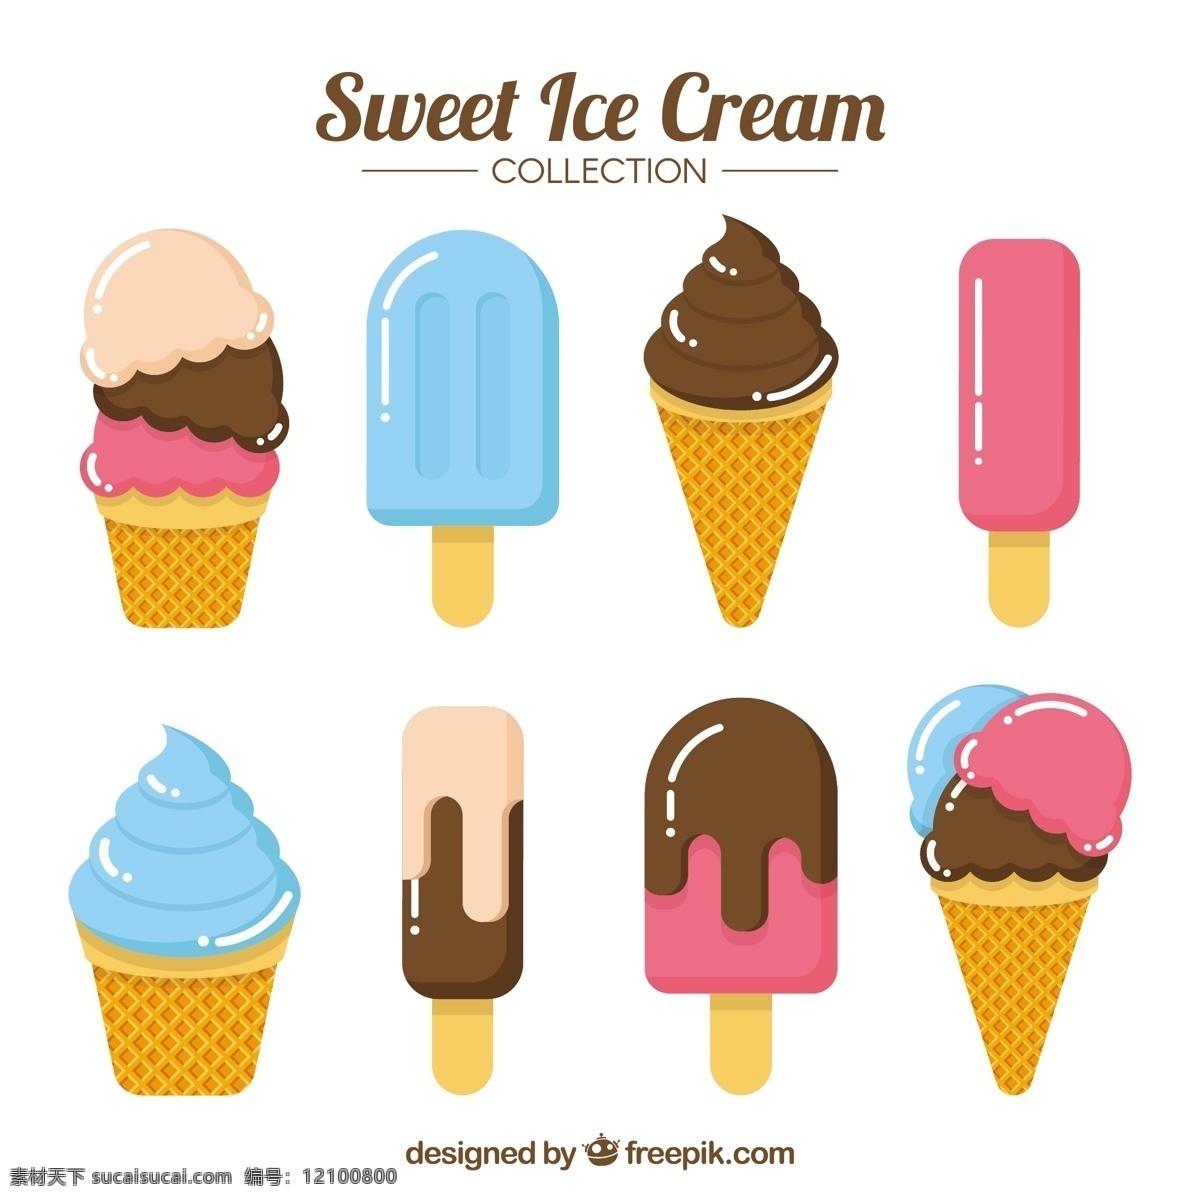 美味 口味 冰淇淋 选择 平 采购产品食物 夏天 颜色 平坦 冰 甜的 平坦的设计 甜点 奶油 吃 季节 锥 味道 有色的 冷却